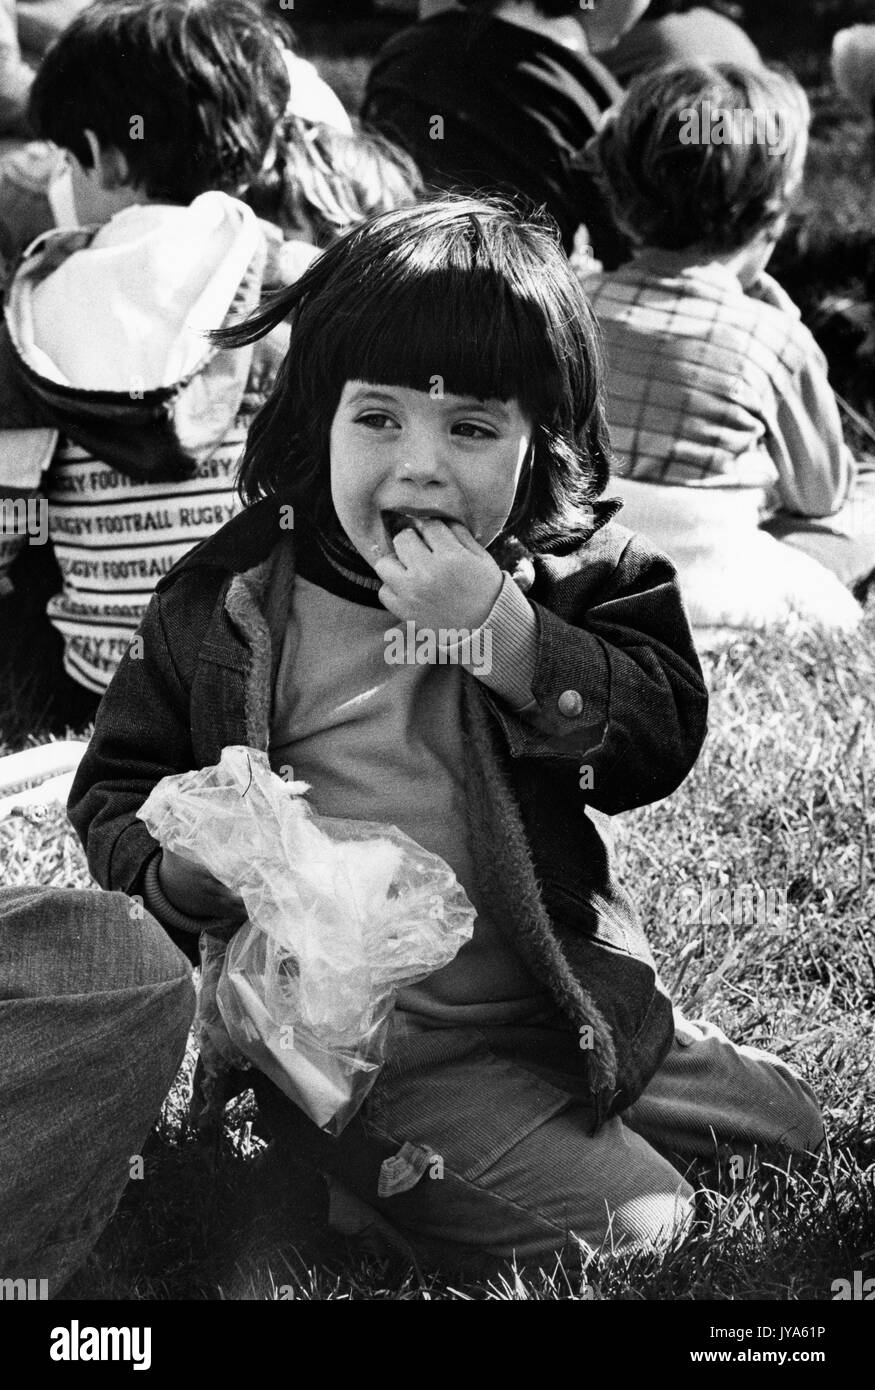 Una giovane ragazza si siede sull'erba mangiando cibo carnevale da un involucro di plastica, circondato da altri bambini e famiglie in background, durante il 3400 in Stage Festival alla Johns Hopkins University, Baltimora, Maryland, aprile 1978. Foto Stock